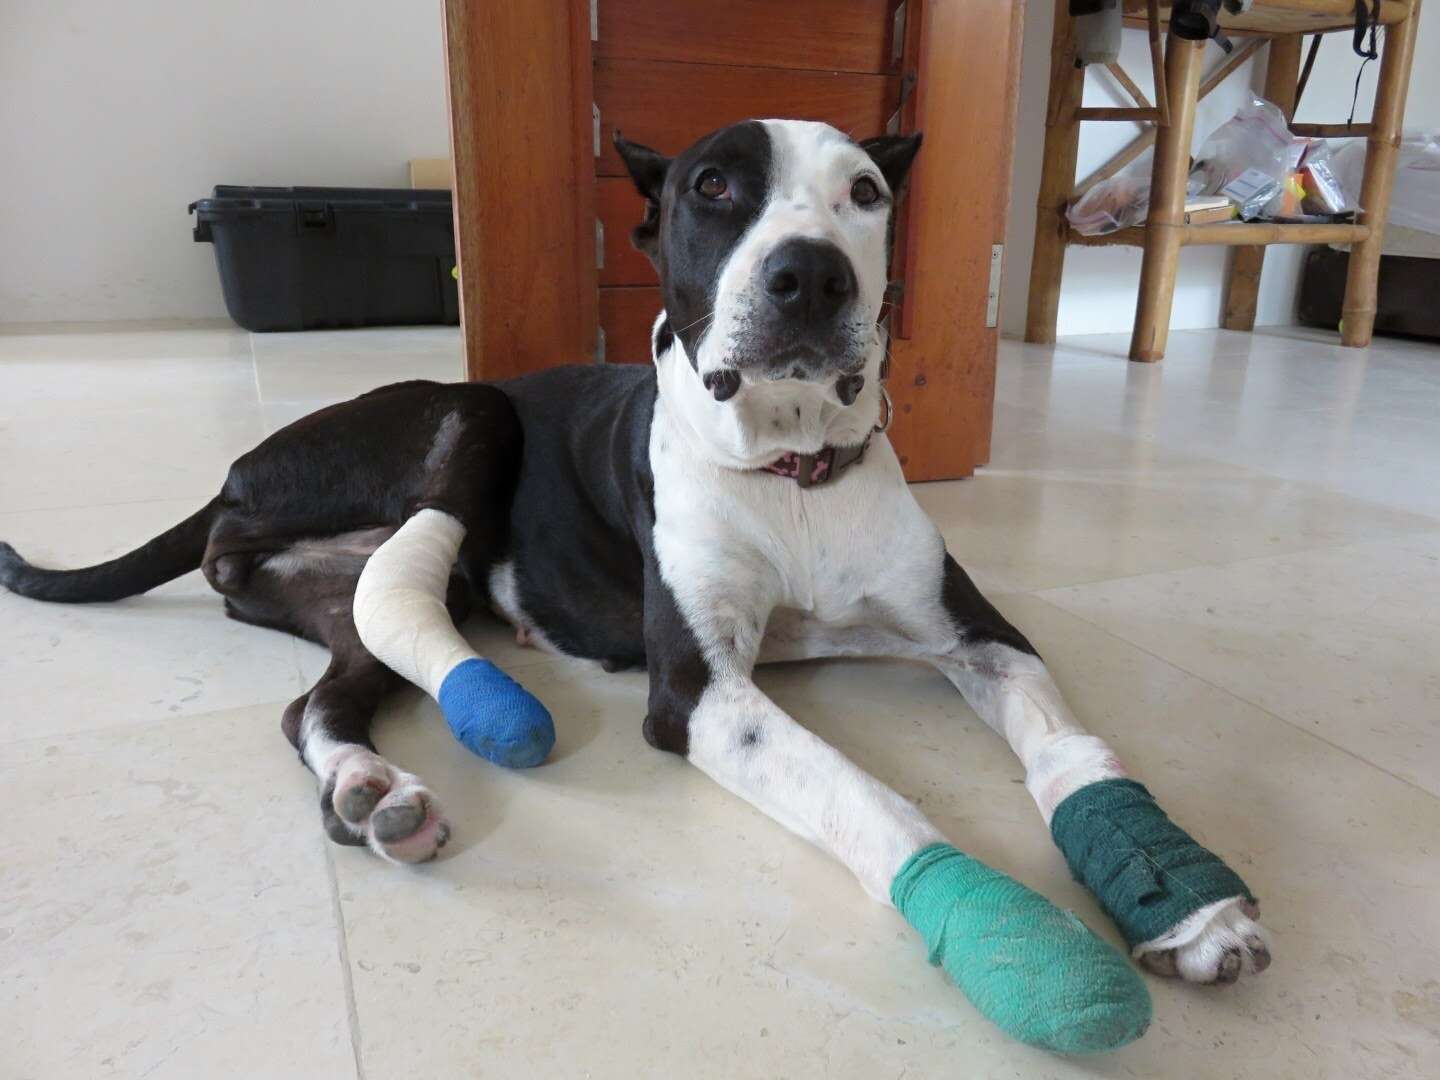 Rescue dog with bandaged legs